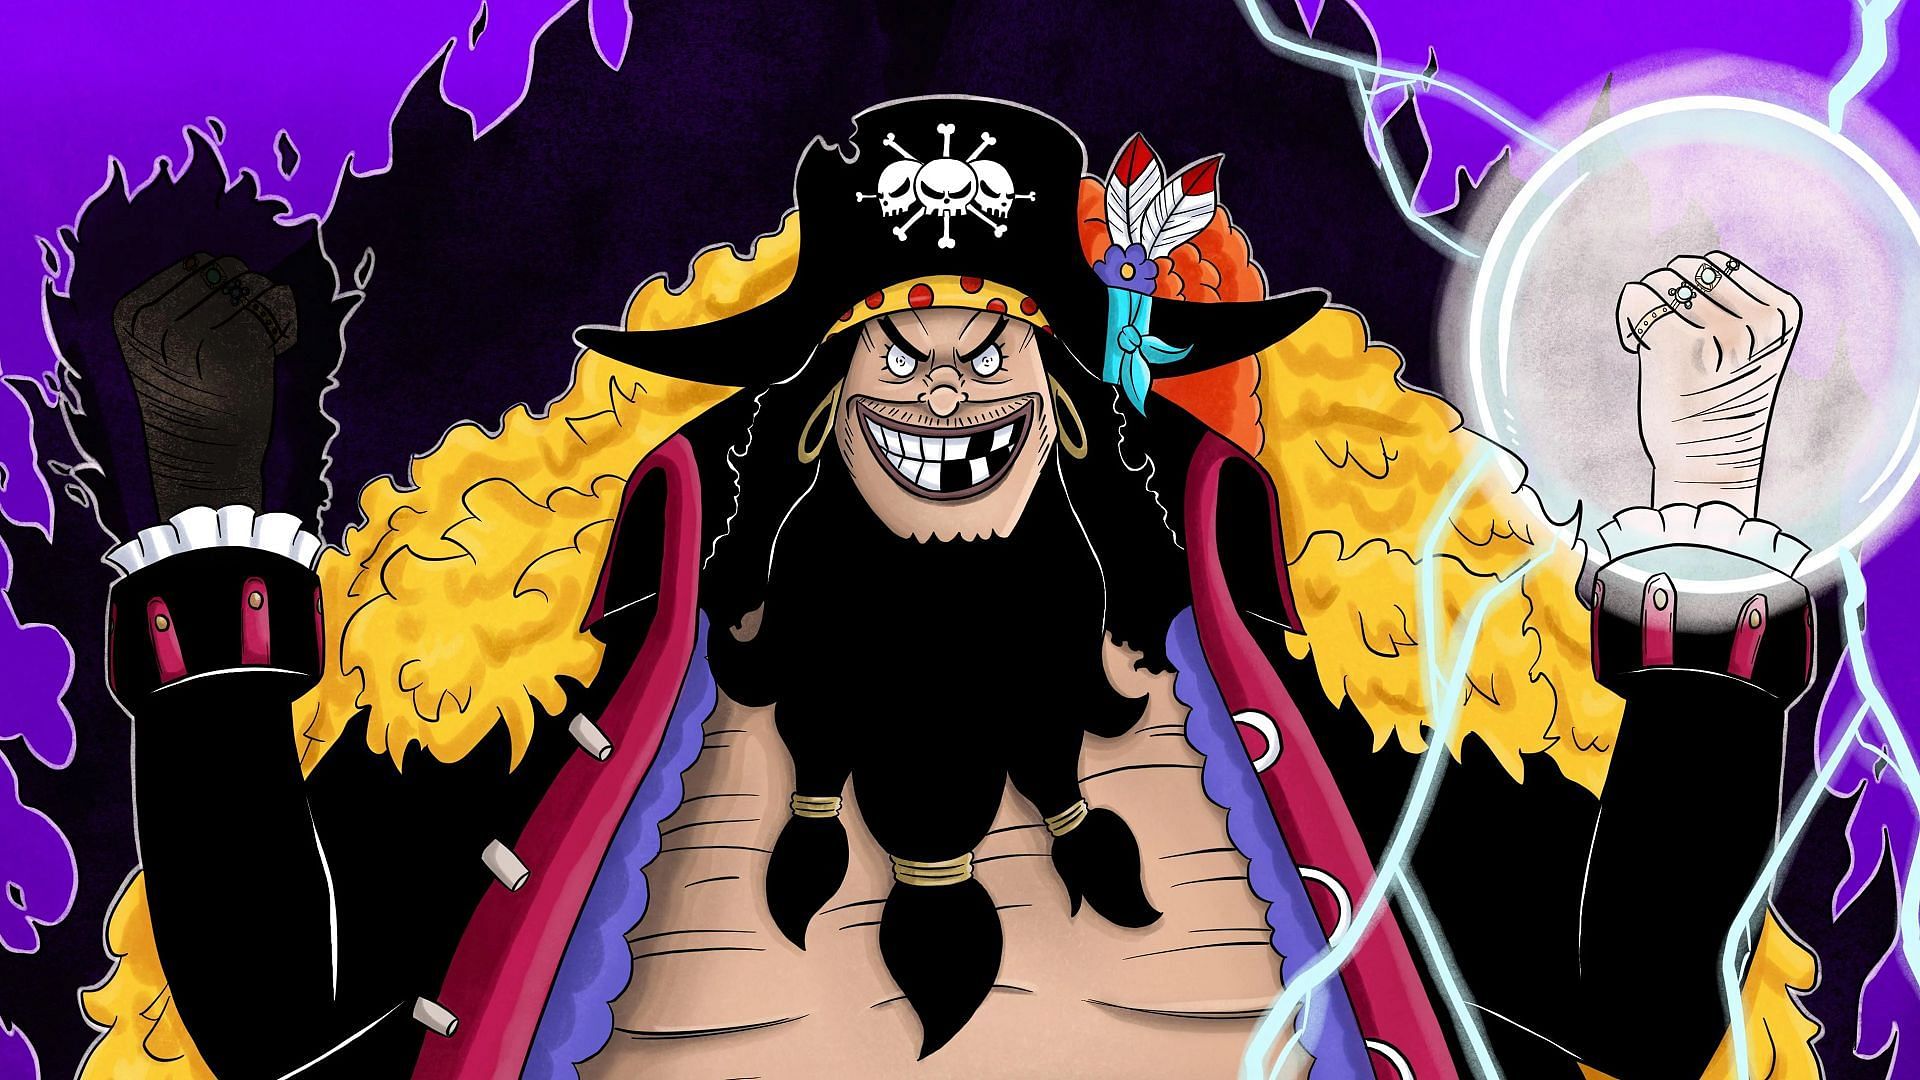 Marshall D. Teach, also known as Blackbeard (Image via Eiichiro Oda/Shueisha, One Piece)